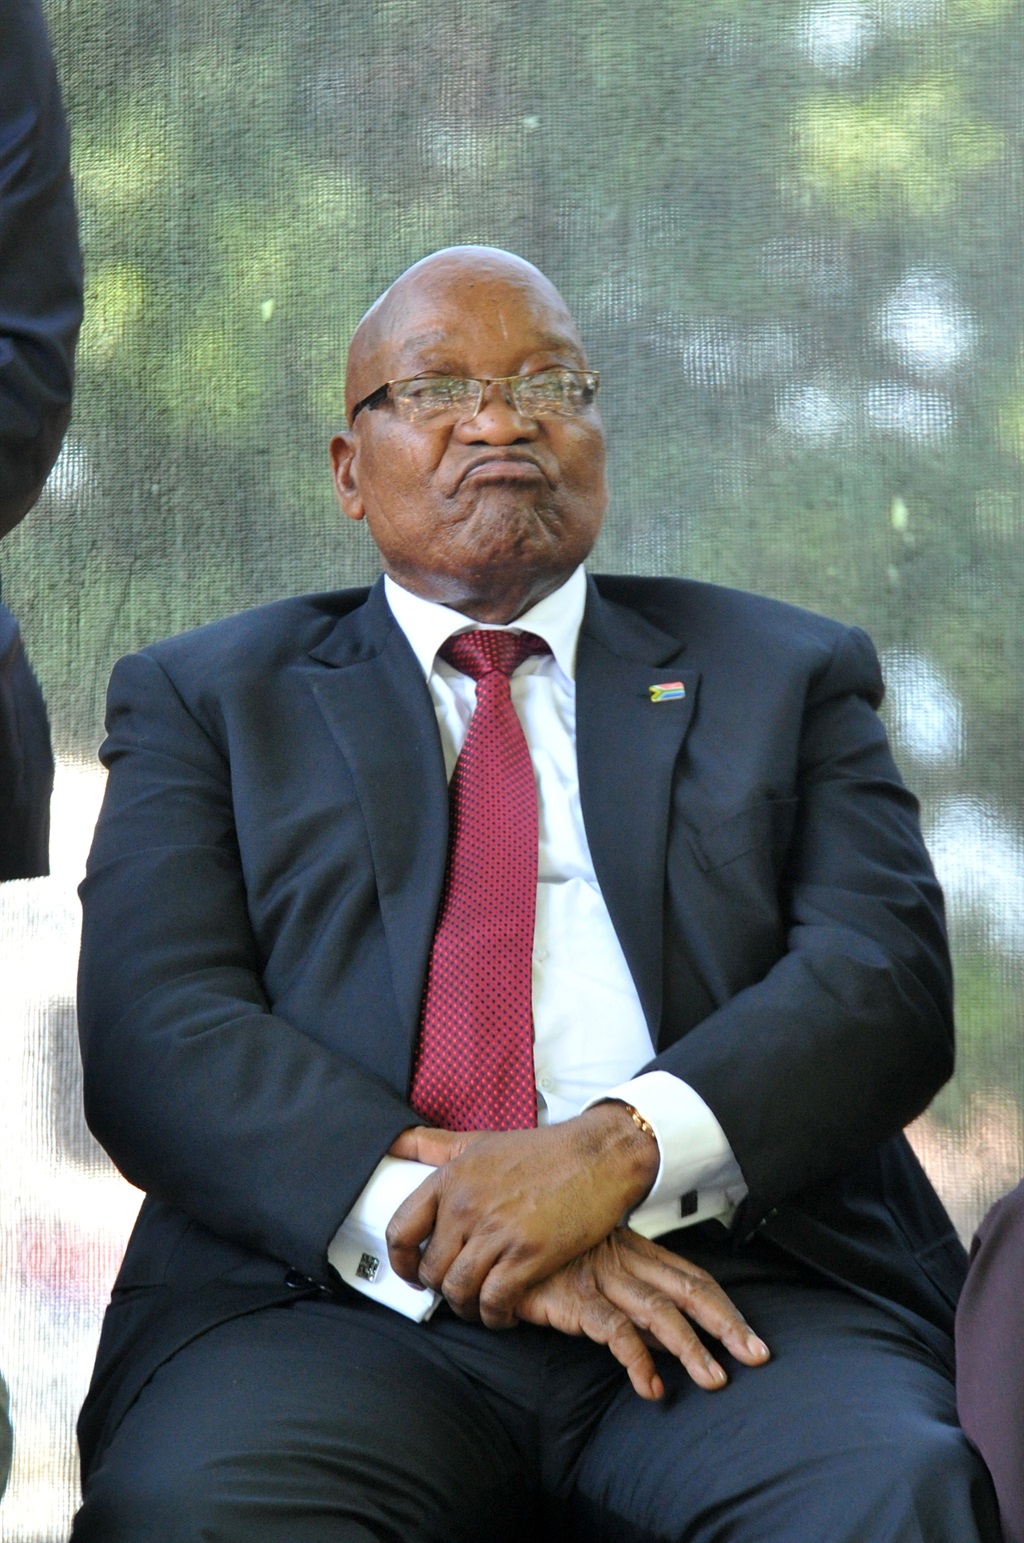 Jacob Zuma won’t be attending next week’s state of the nation address. Picture: Jabulani Langa